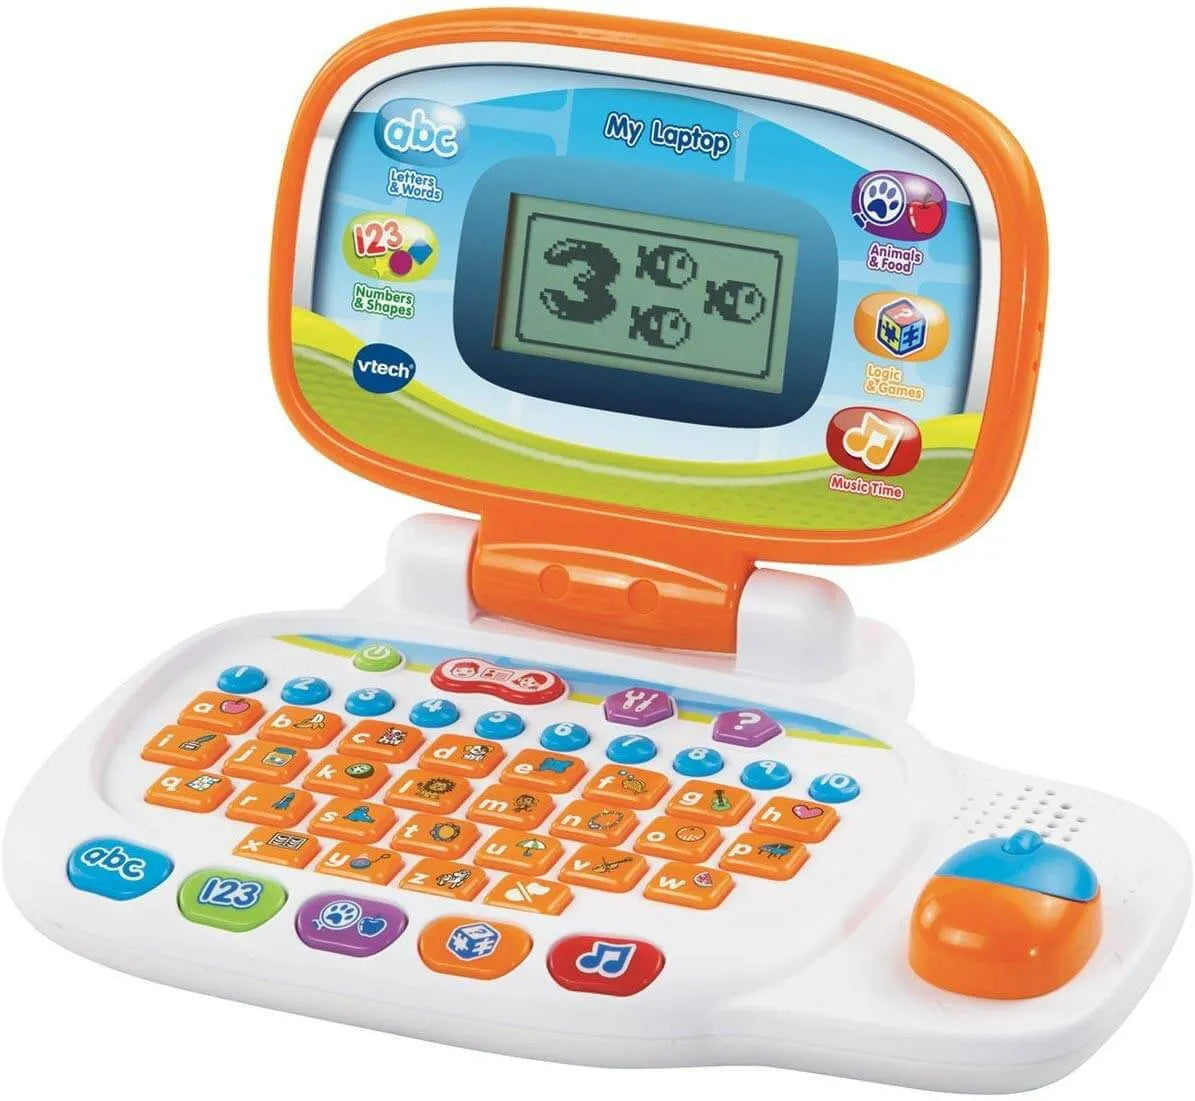 Shop vtech laptop for kids - early learning toys from vtech - Vtech my laptop